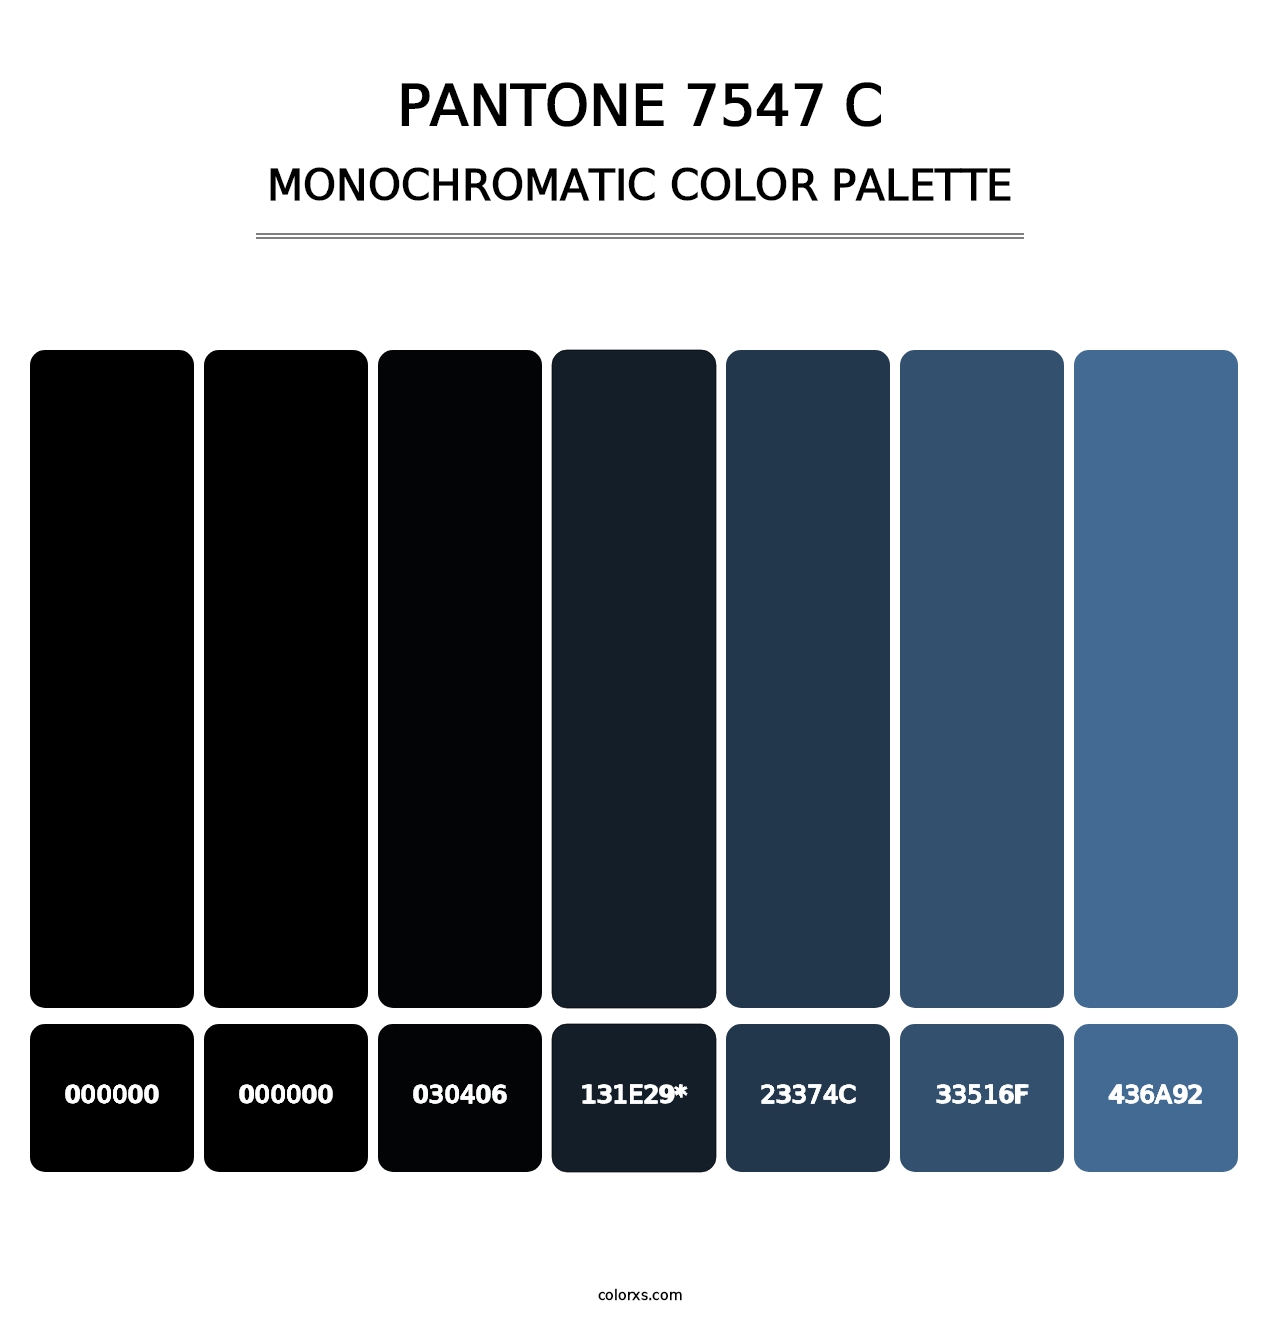 PANTONE 7547 C - Monochromatic Color Palette